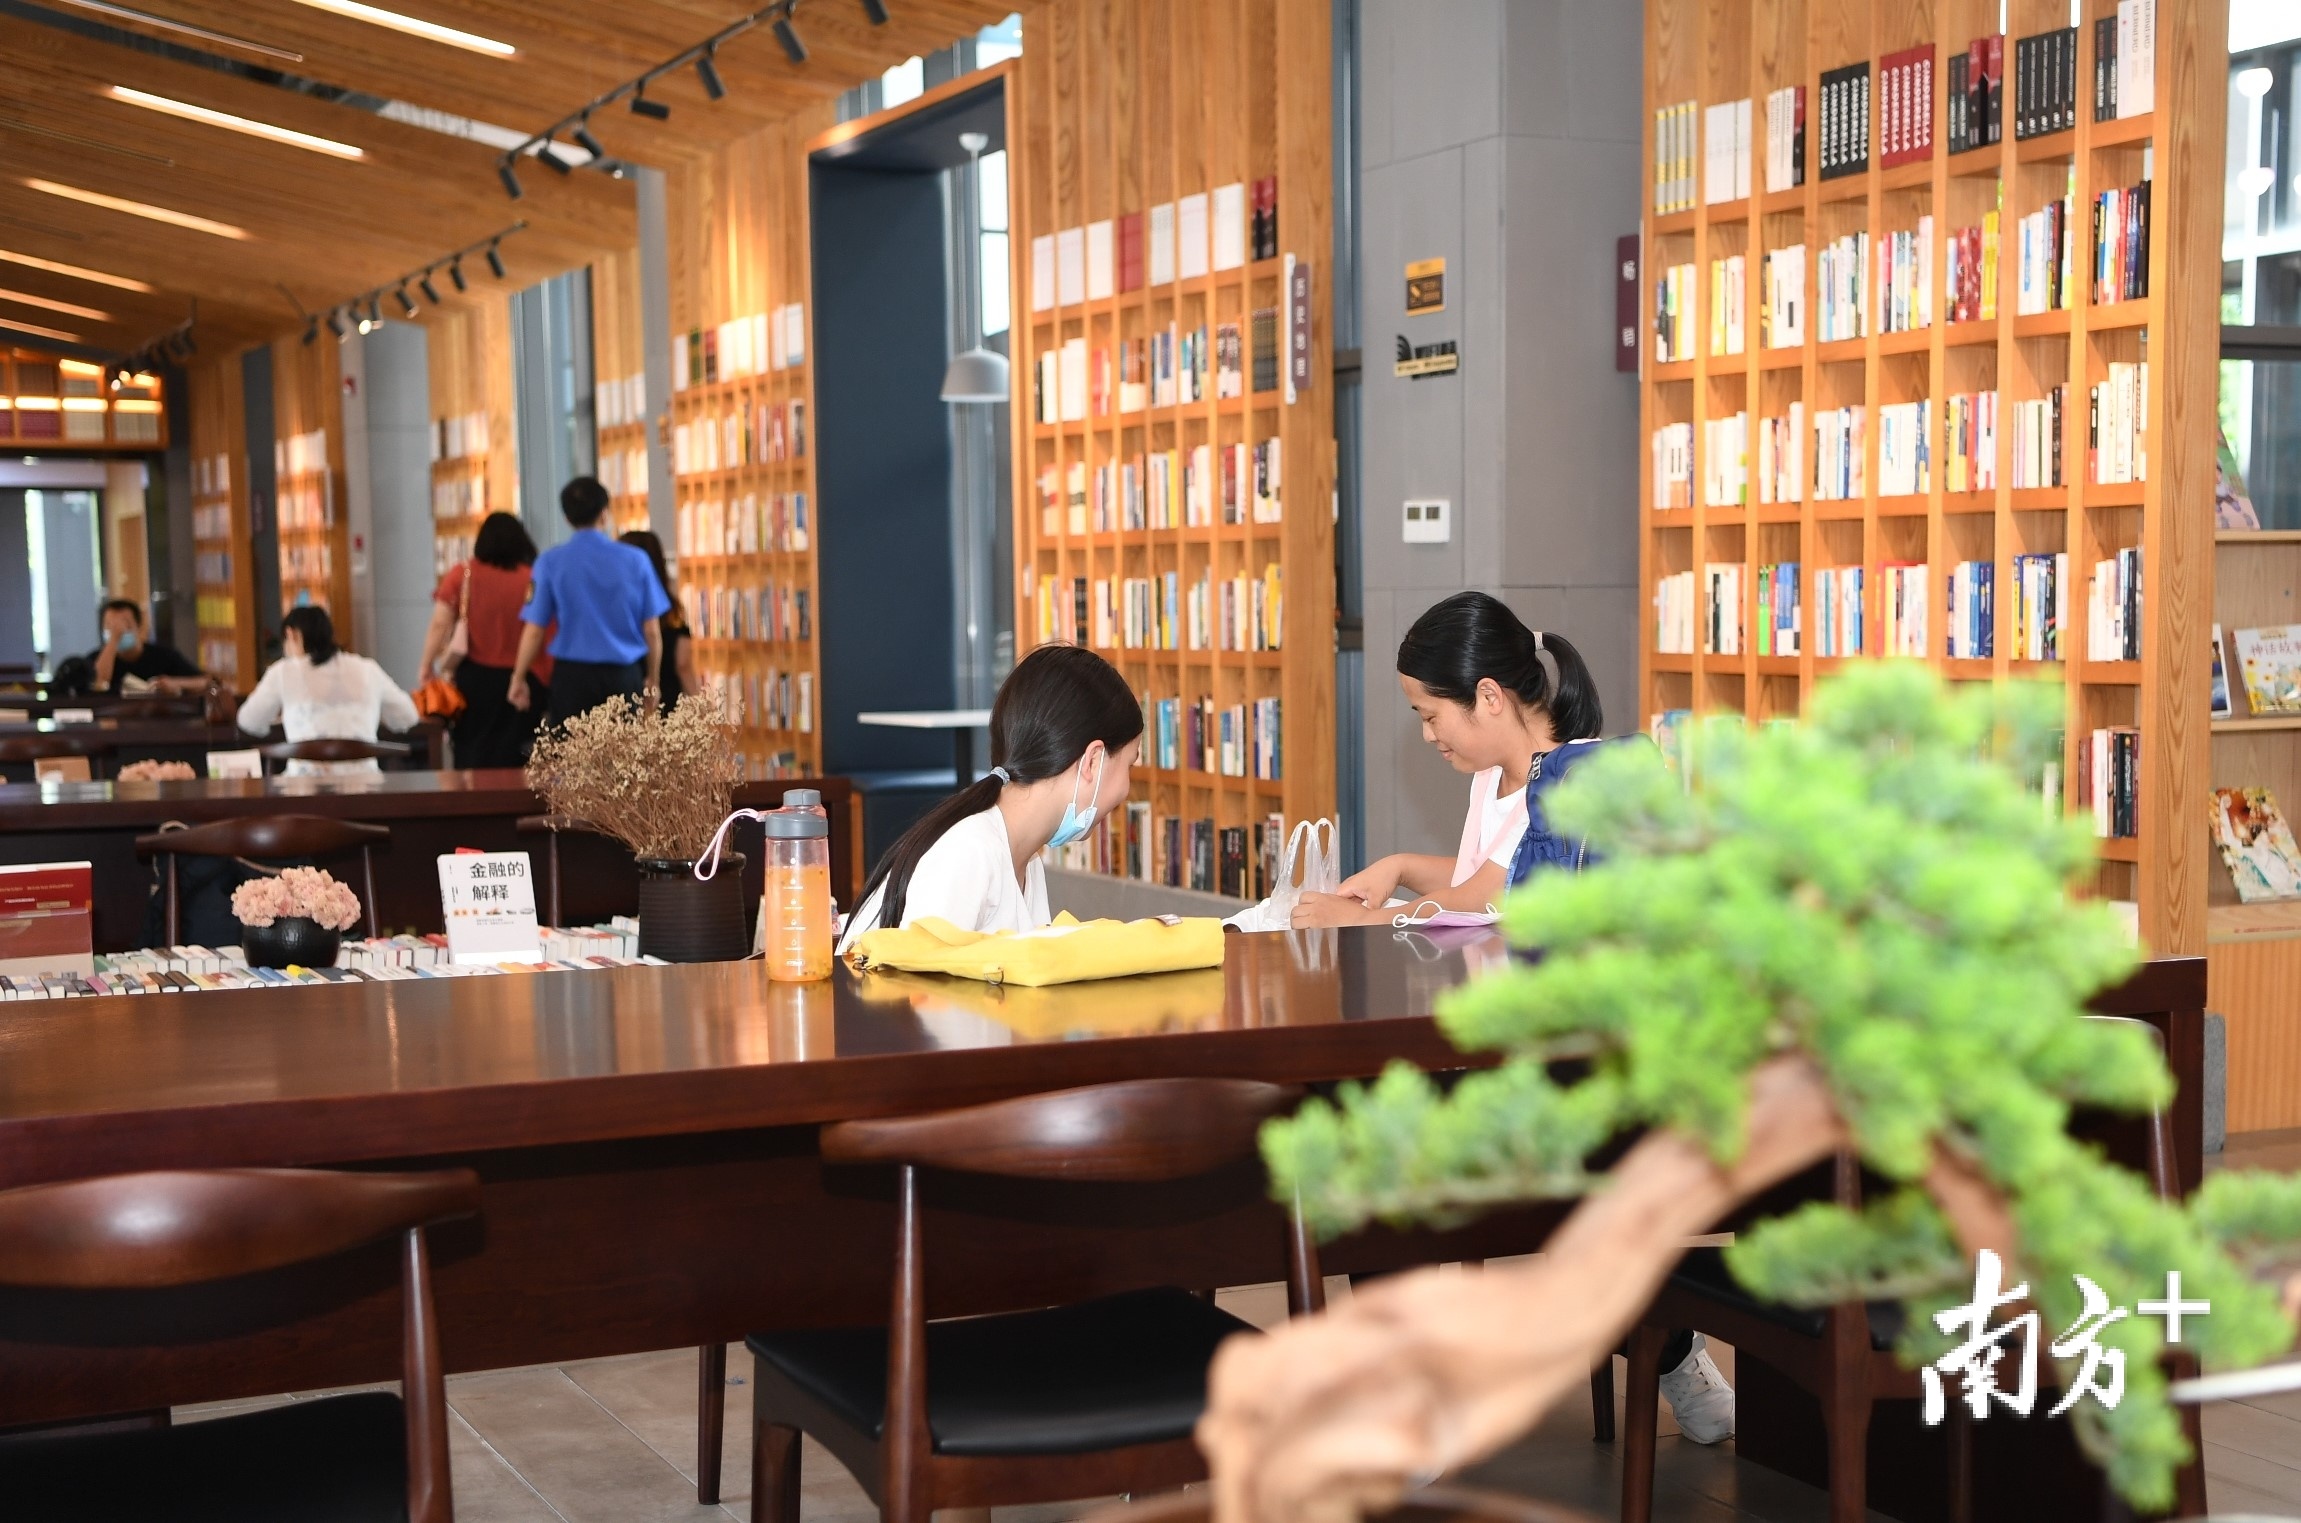 江海区龙溪湖阅读中心是读书好去处。杨兴乐摄